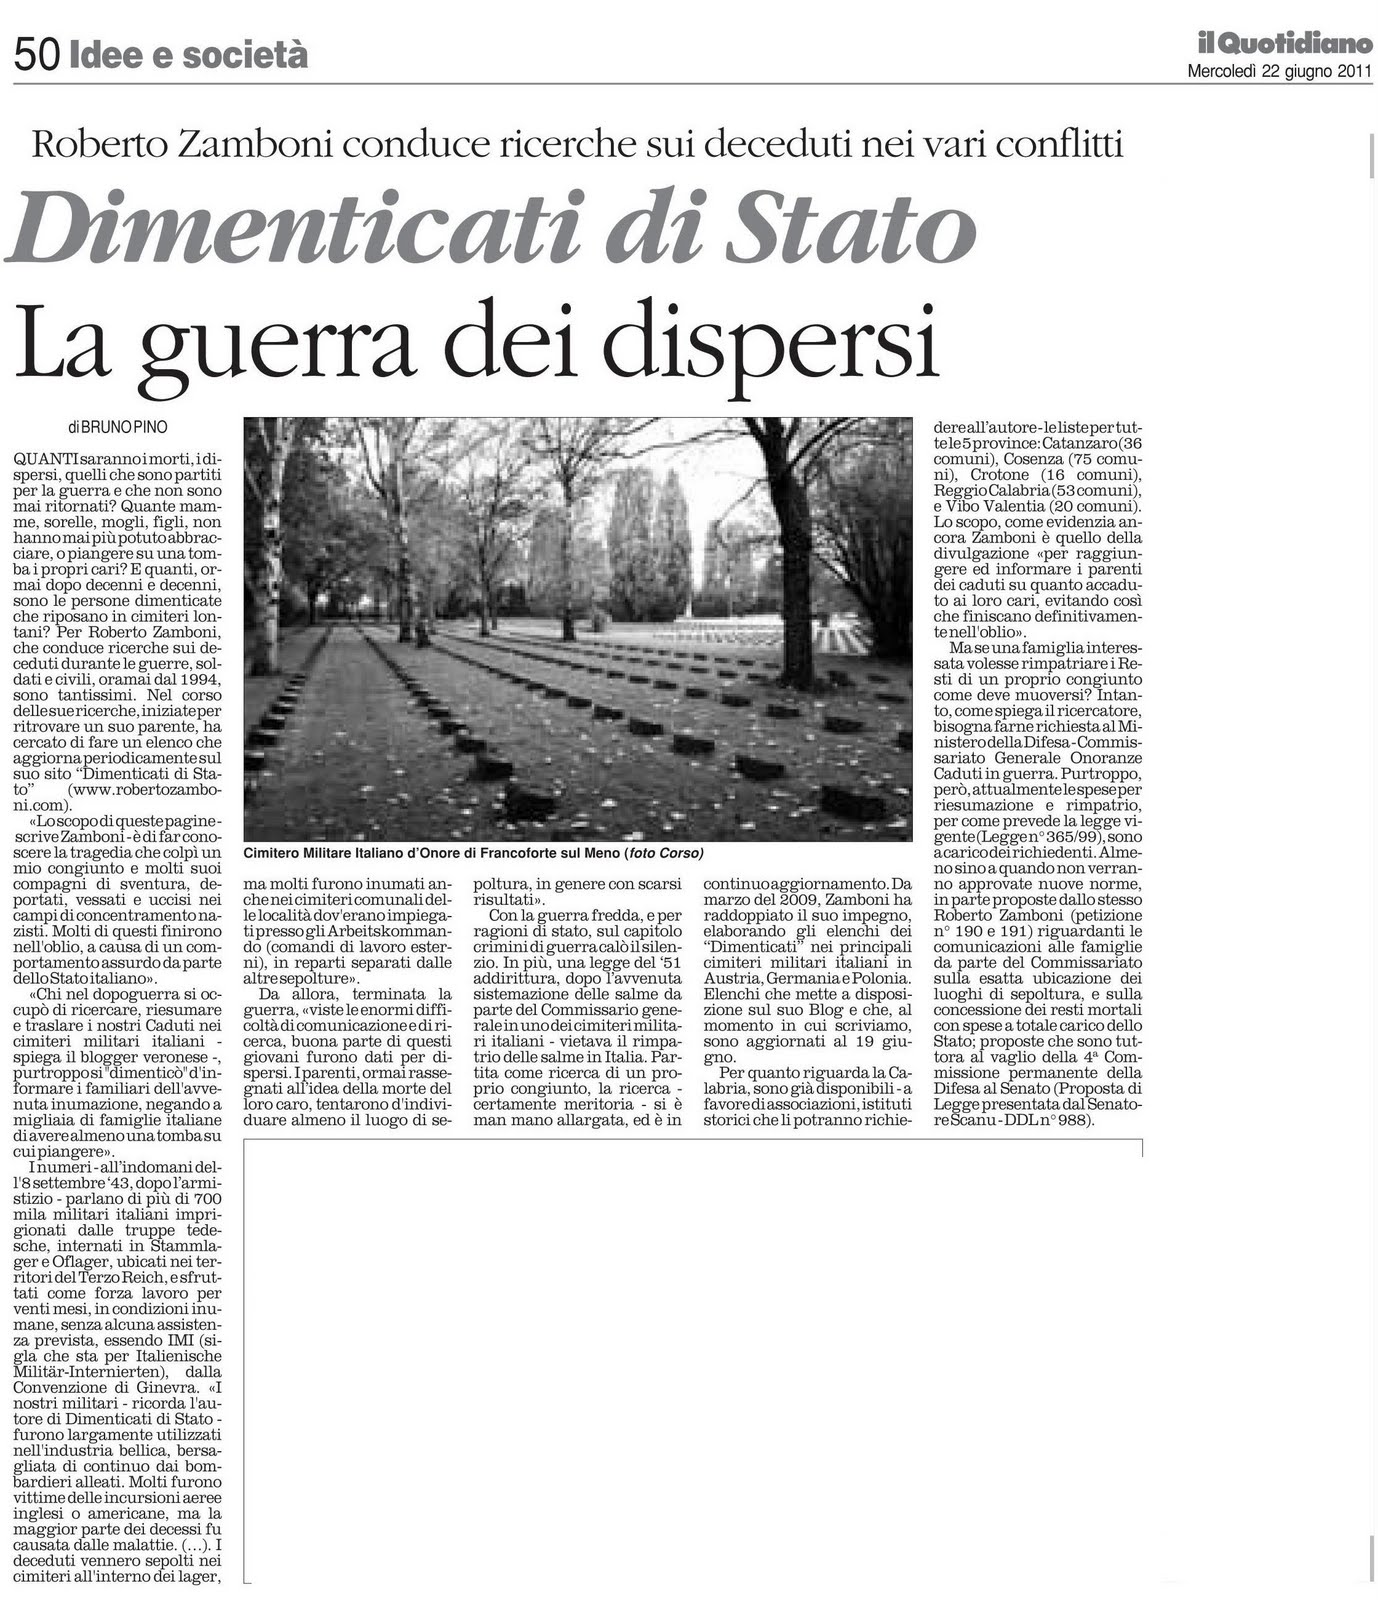 Thumbnail image for /public/upload/2011/6/634446052037454348_Dimenticati di Stato Il Quotidiano 22.06.2011 pag. 50.jpg